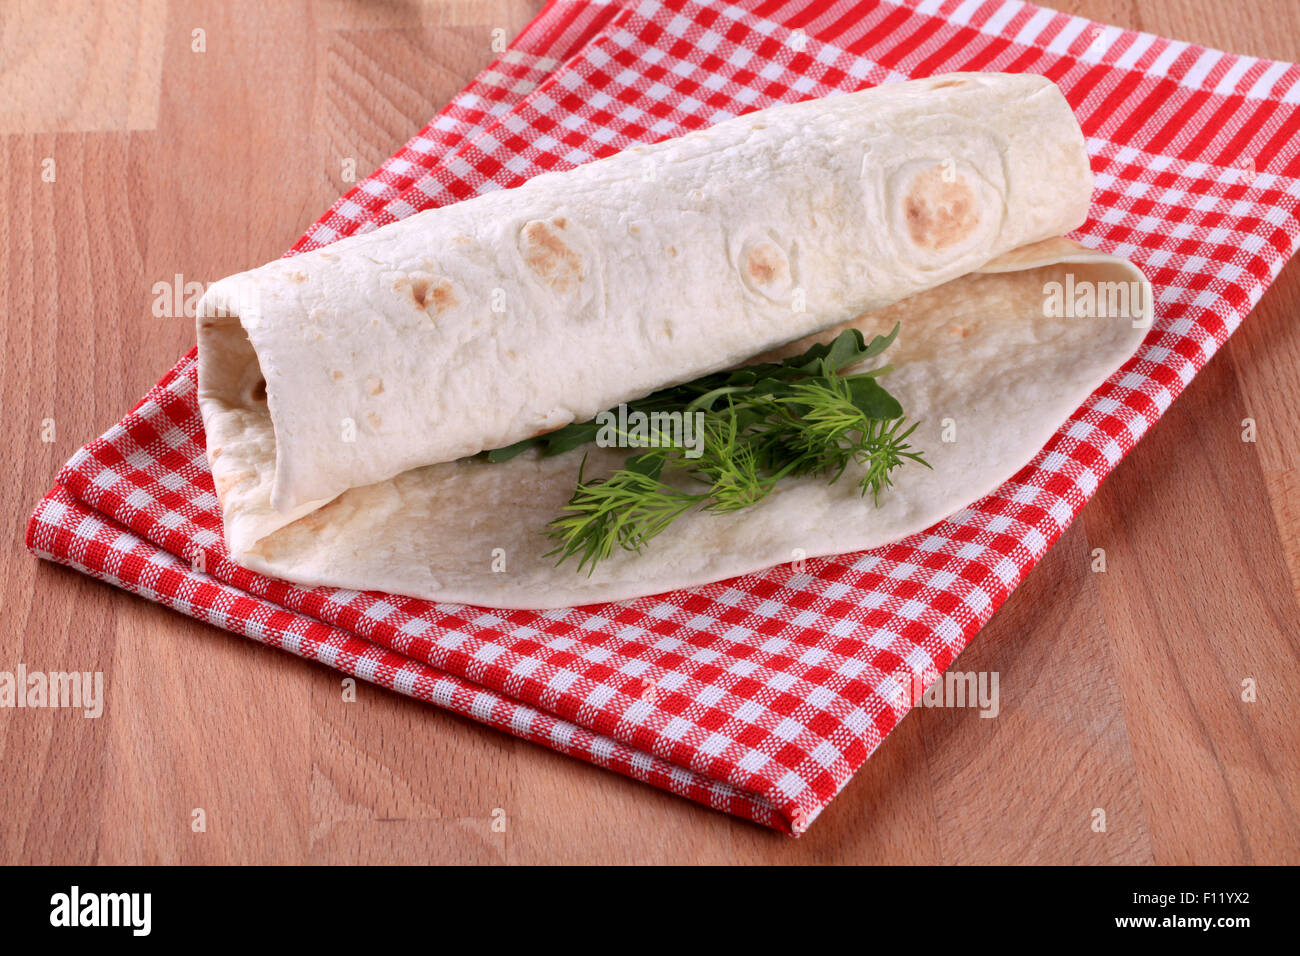 Burrito - Weizenmehl Tortilla um eine Füllung gewickelt Stockfoto